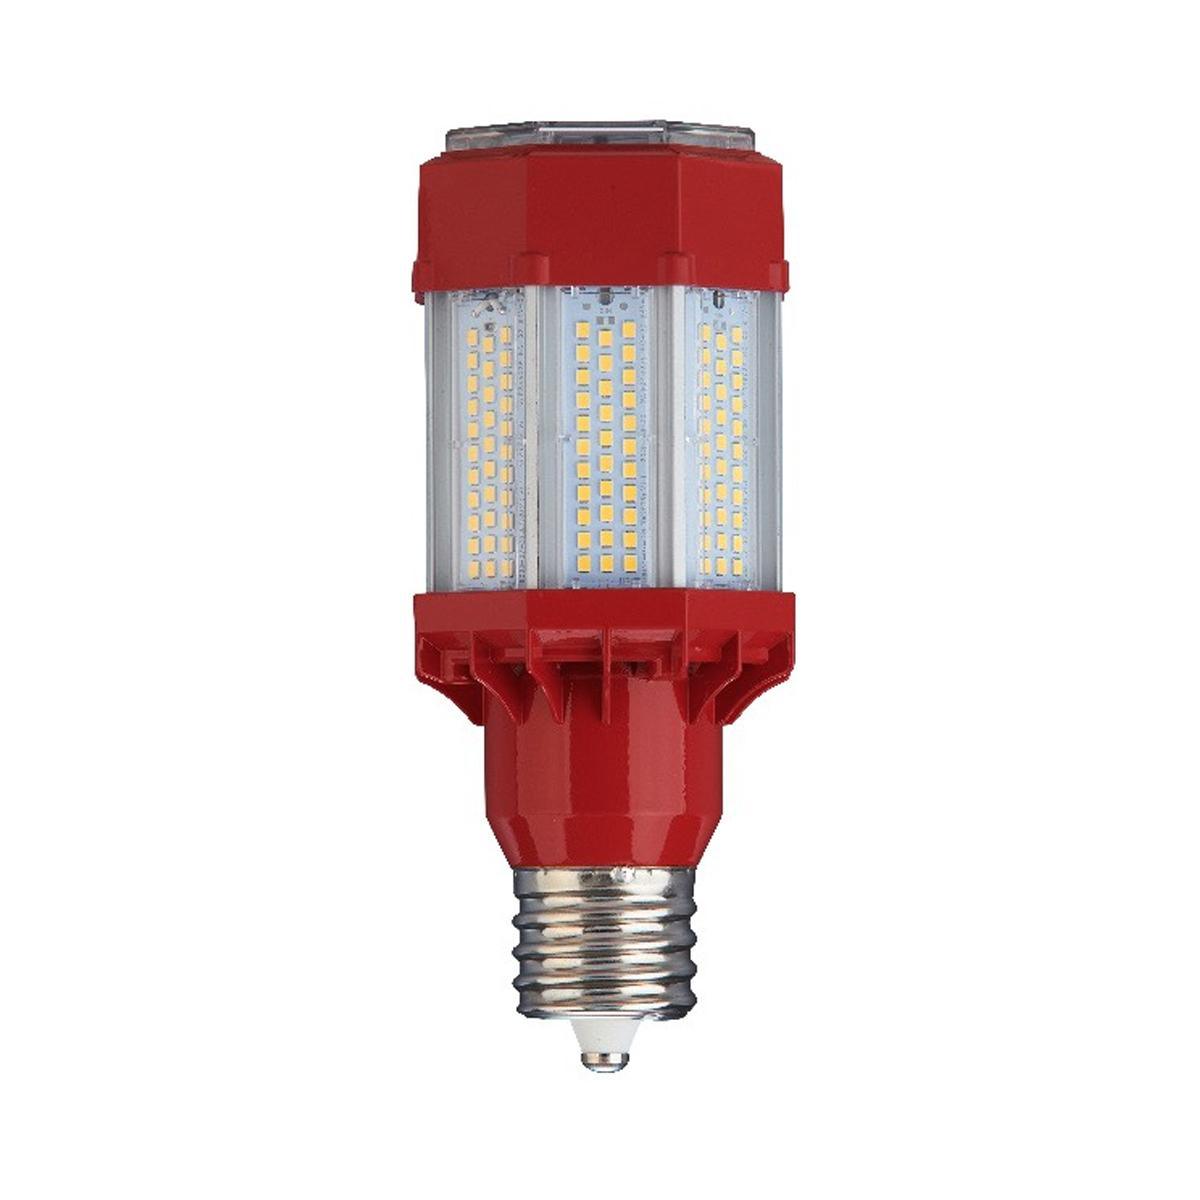 LED Corn Retrofit Lamp, 45W, 6620 Lumens, 5000K, E26 Mogul Base, 120-277V - Bees Lighting